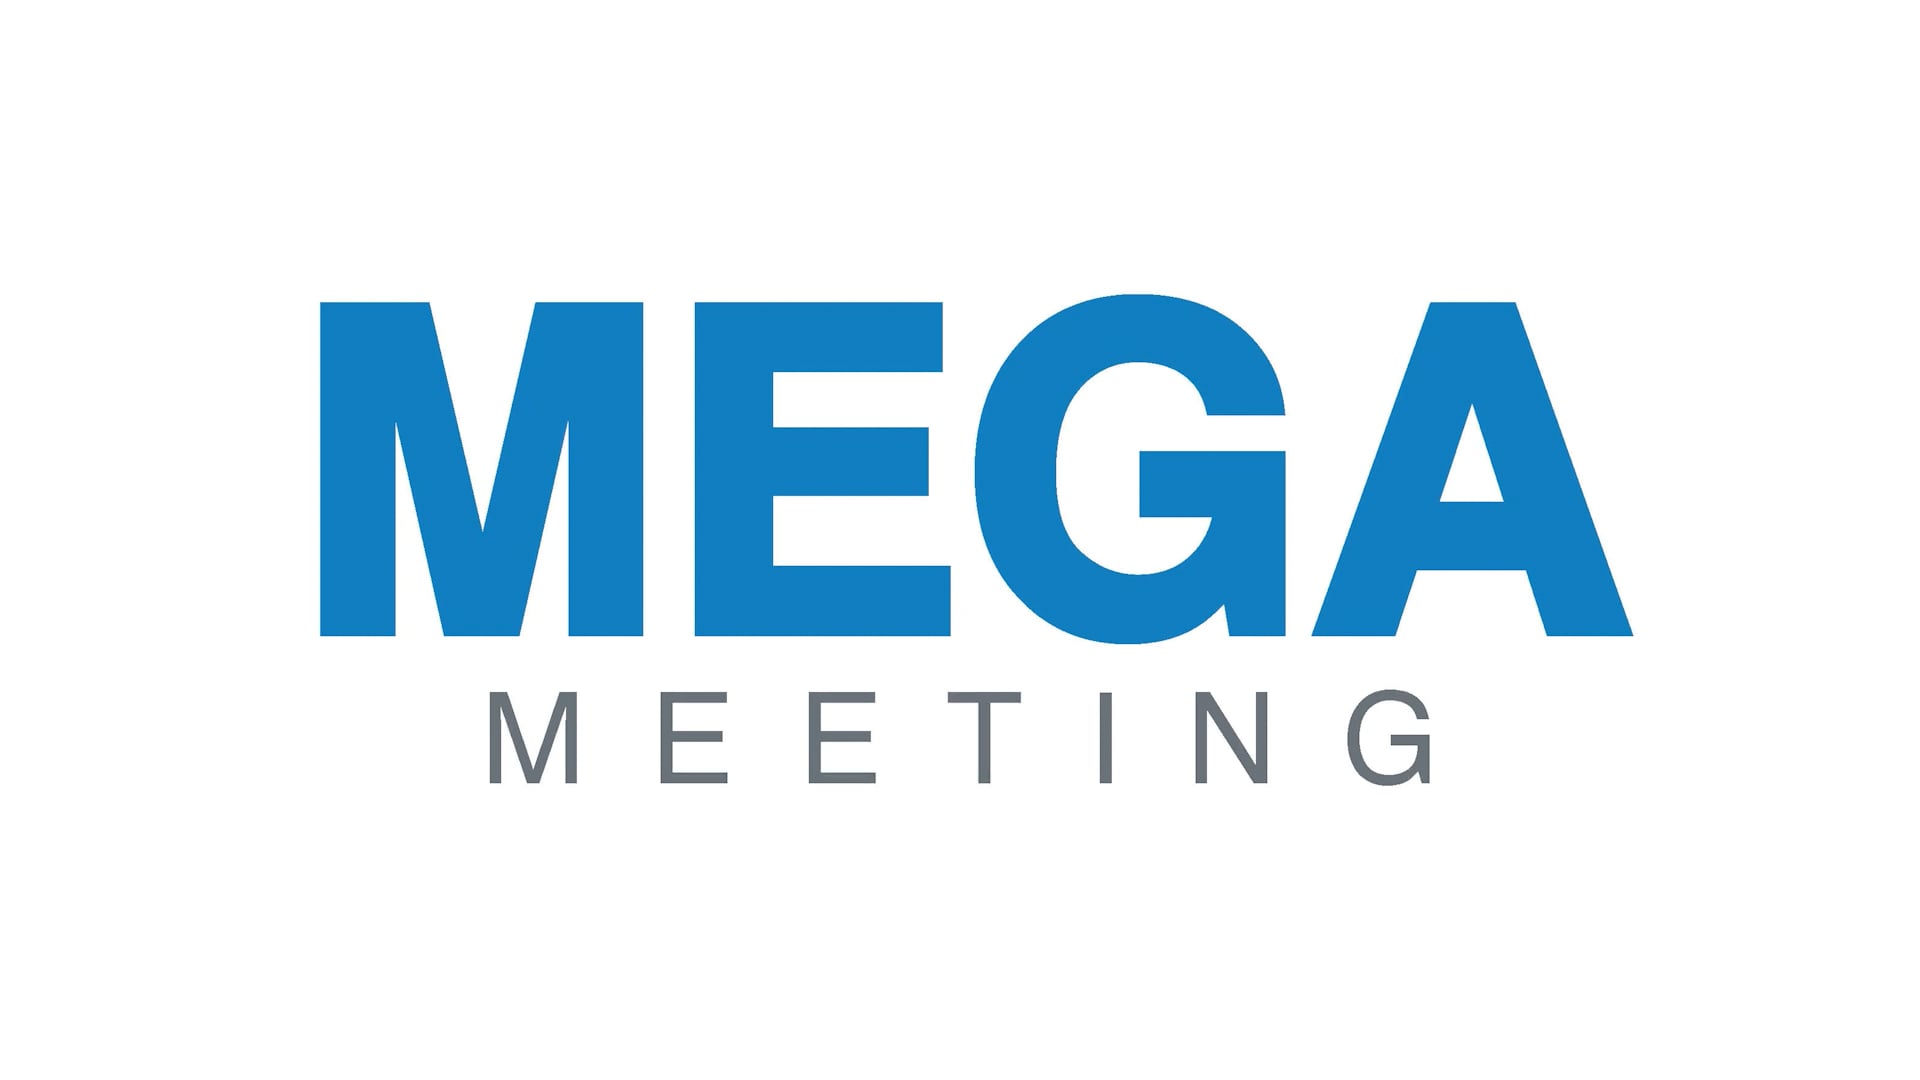 Mega Meet v2.mp4 on Vimeo